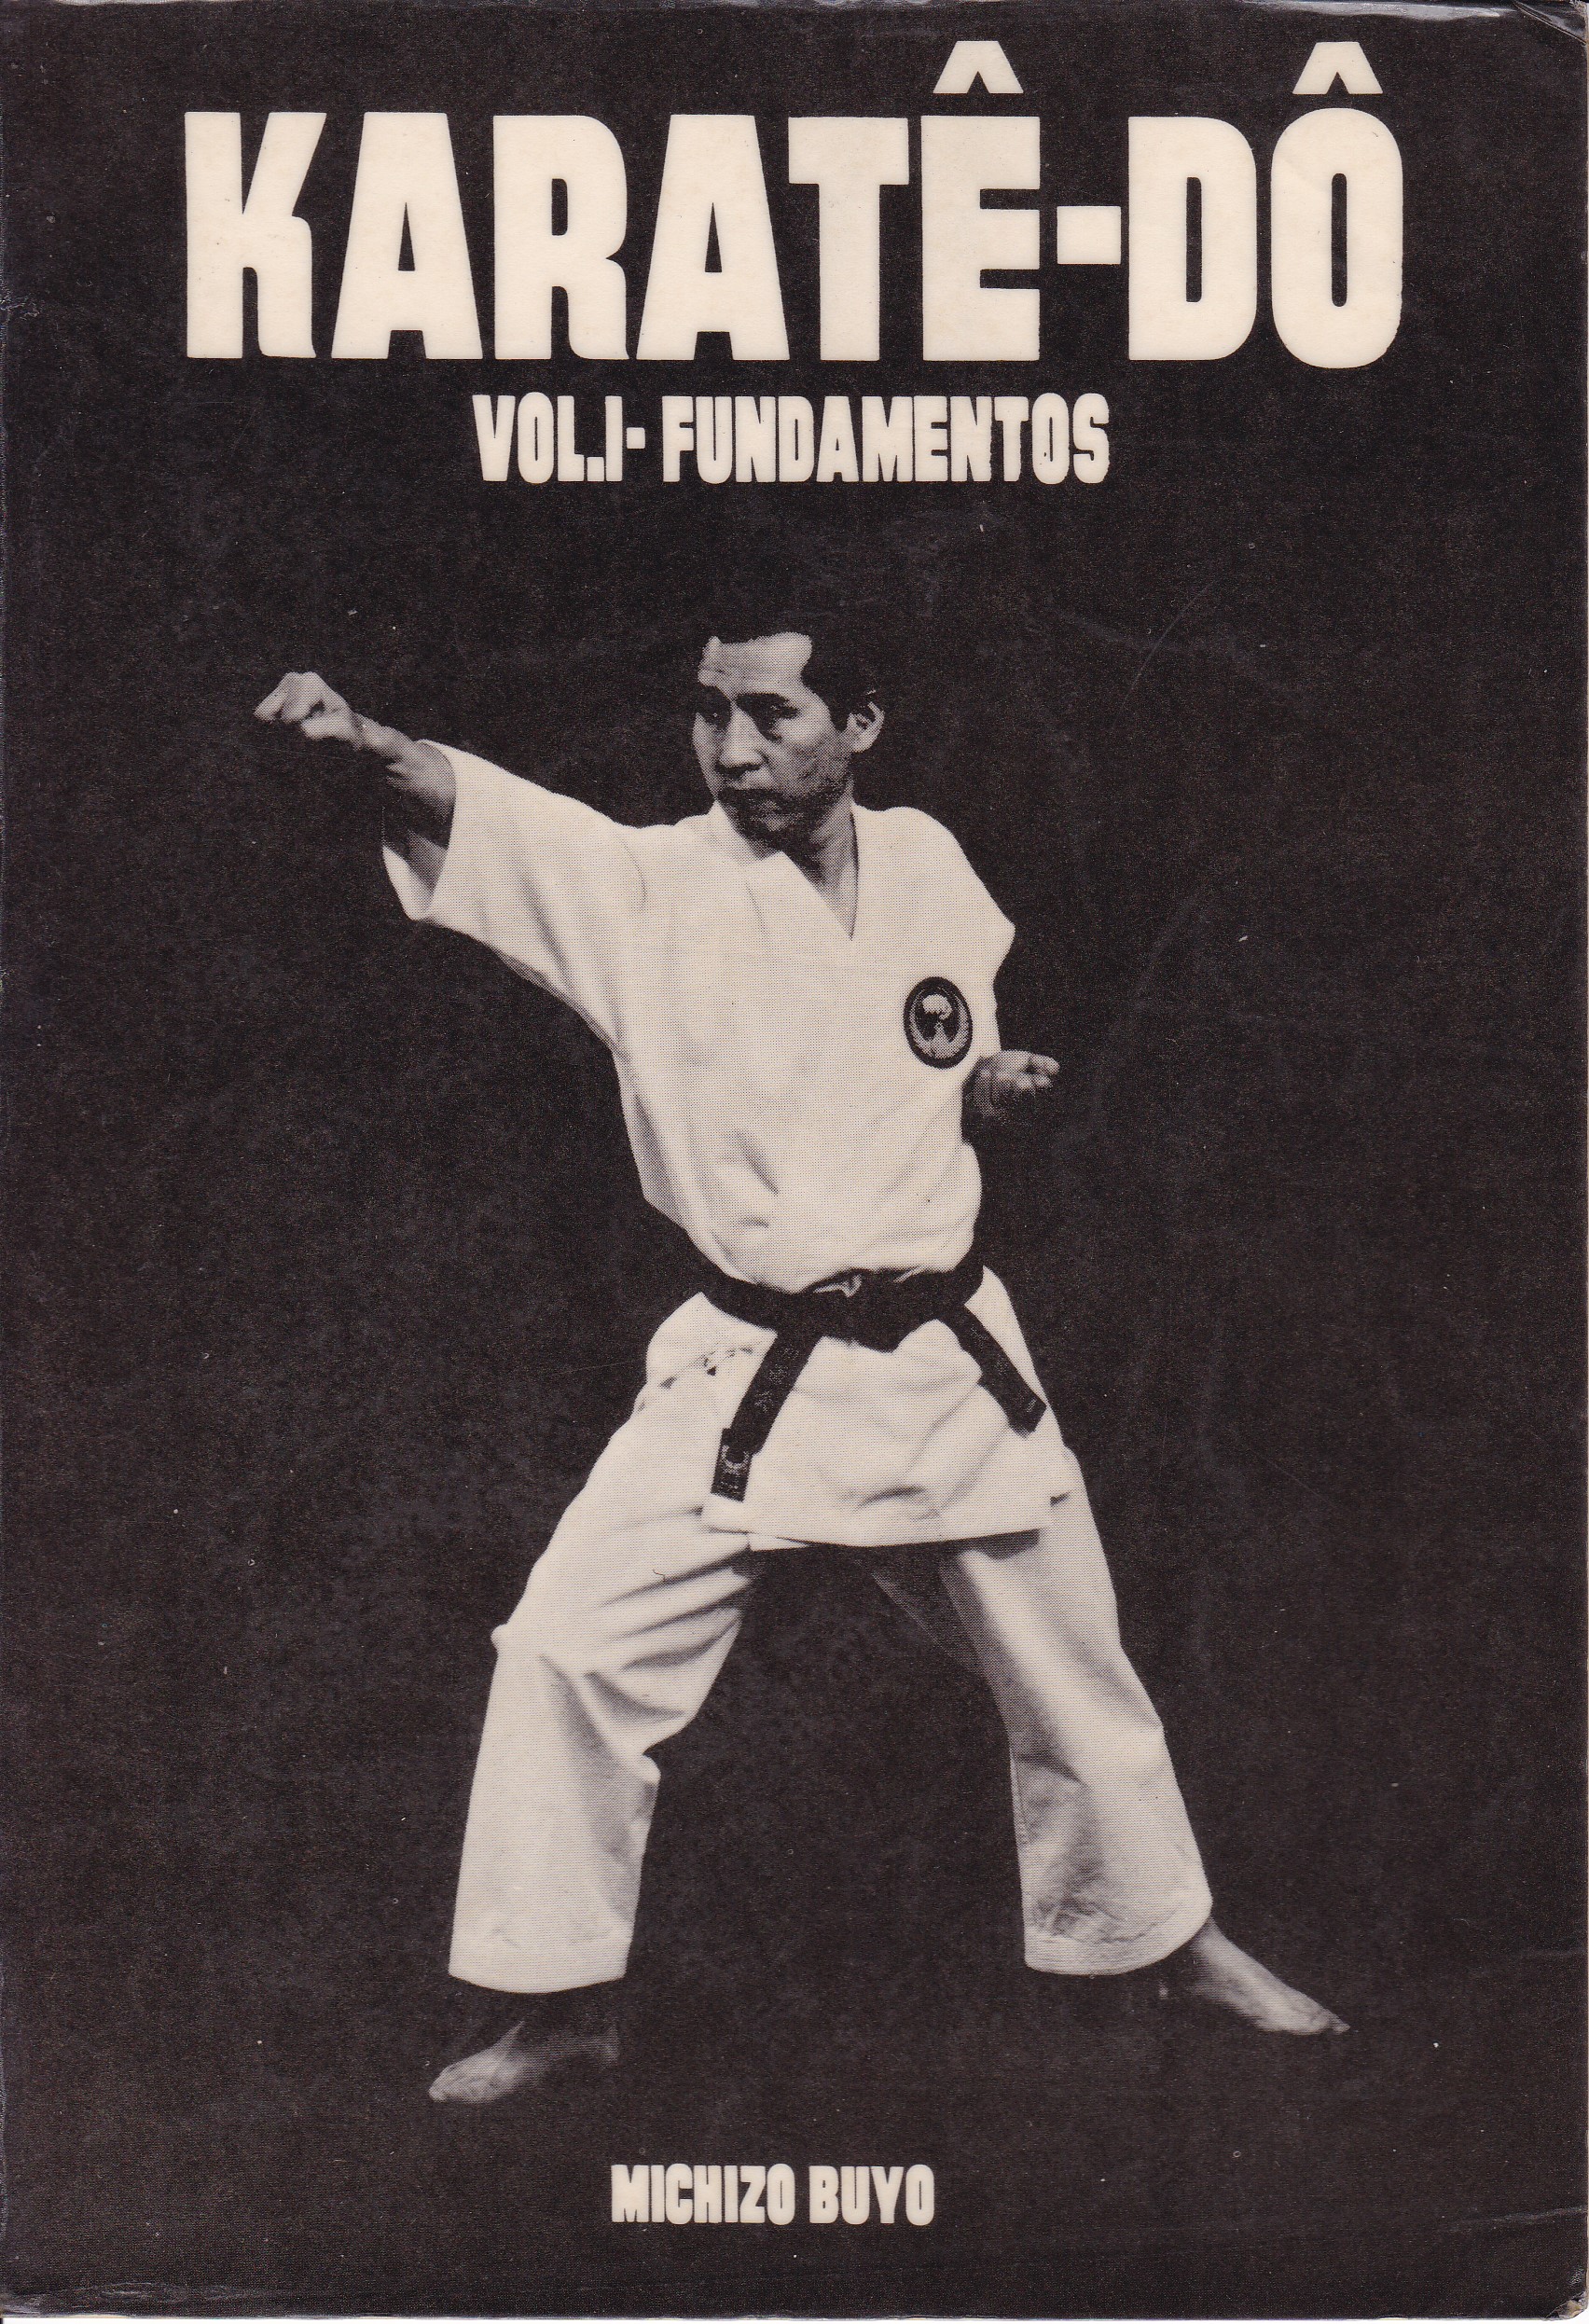 baixar livro jiu jitsu portugues